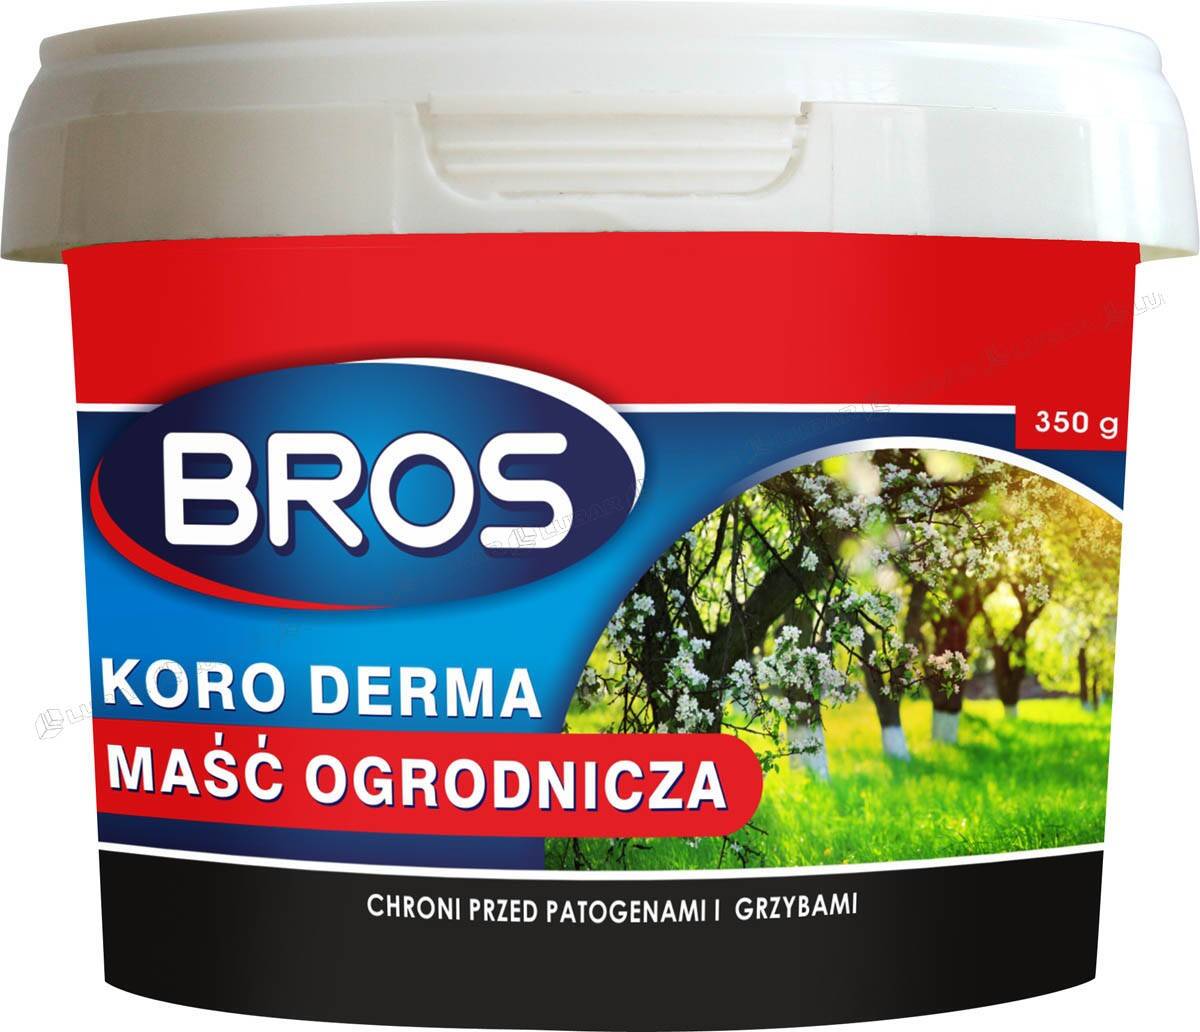 Maść ogrodnicza Koro-Derma 350 g BROS (Zdjęcie 1)